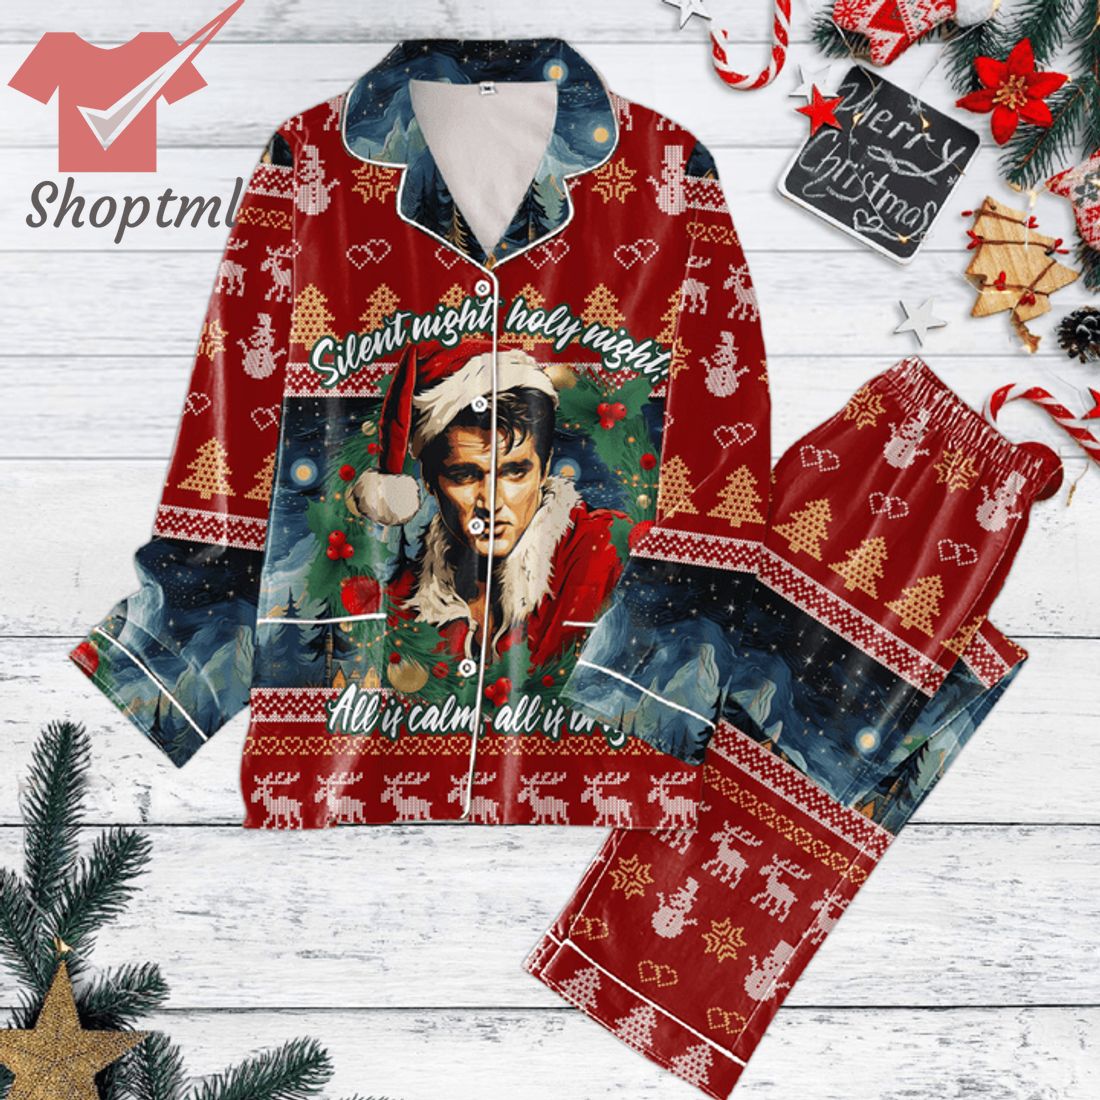 Elvis Presley Silent Night Holy Night Christmas Pajamas Set